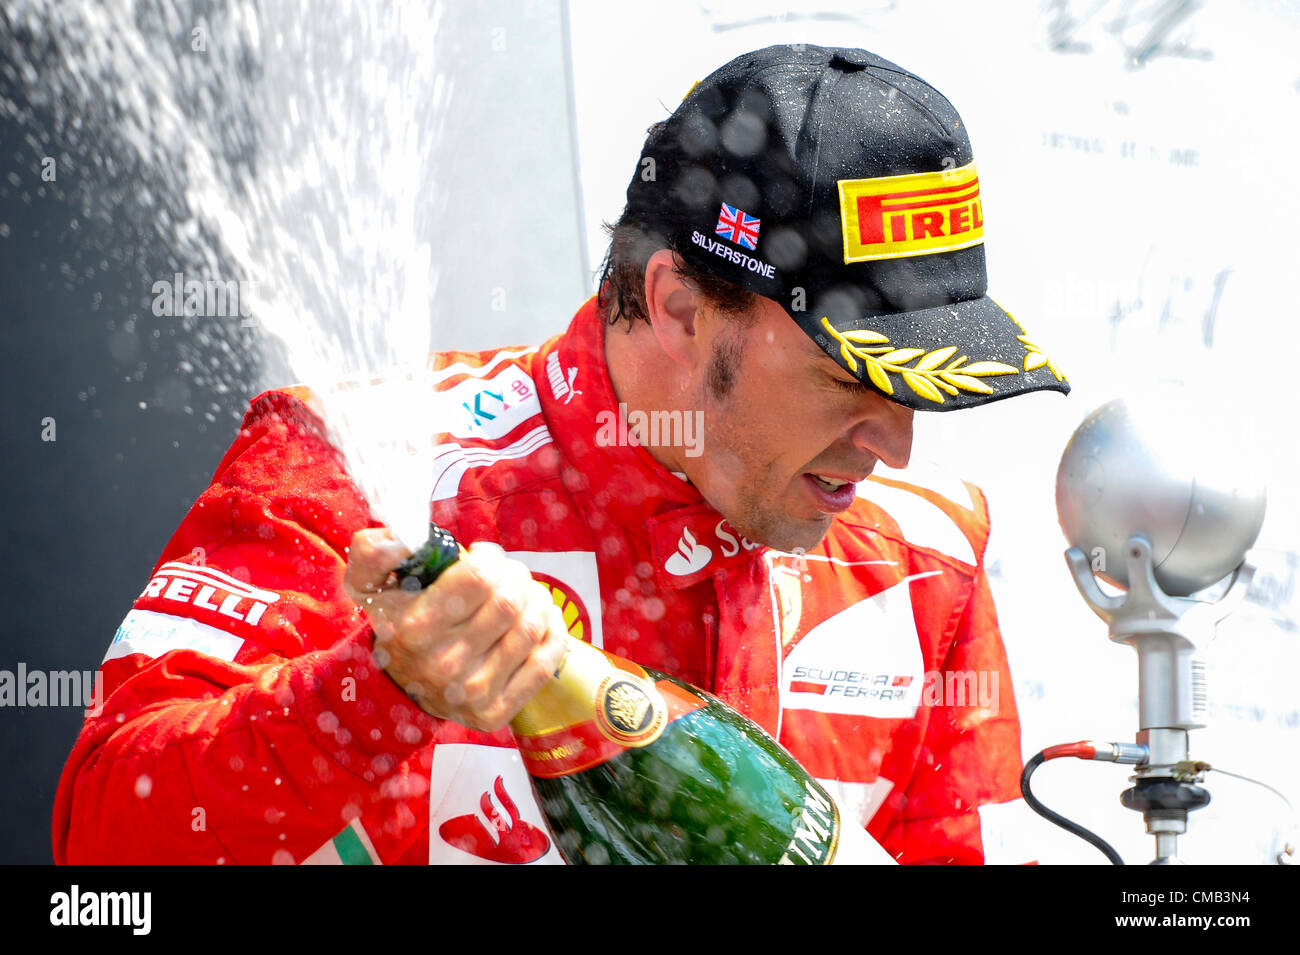 08.07.2012 Towcester, England. Runner-up Fernando Alonso Spanien und Scuderia Ferrari sprüht Champagner auf dem Podium nach dem Rennen beim britischen Grand Prix Santander, Runde 9 der 2012 FIA Formel 1 Weltmeisterschaft in Silverstone. Stockfoto